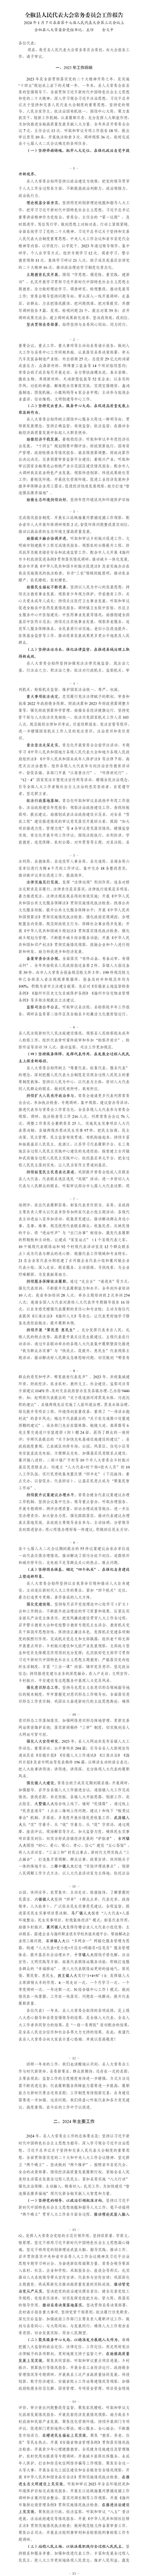 全椒县人民代表大会常务委员会工作报告定稿2024.1.4_01.png